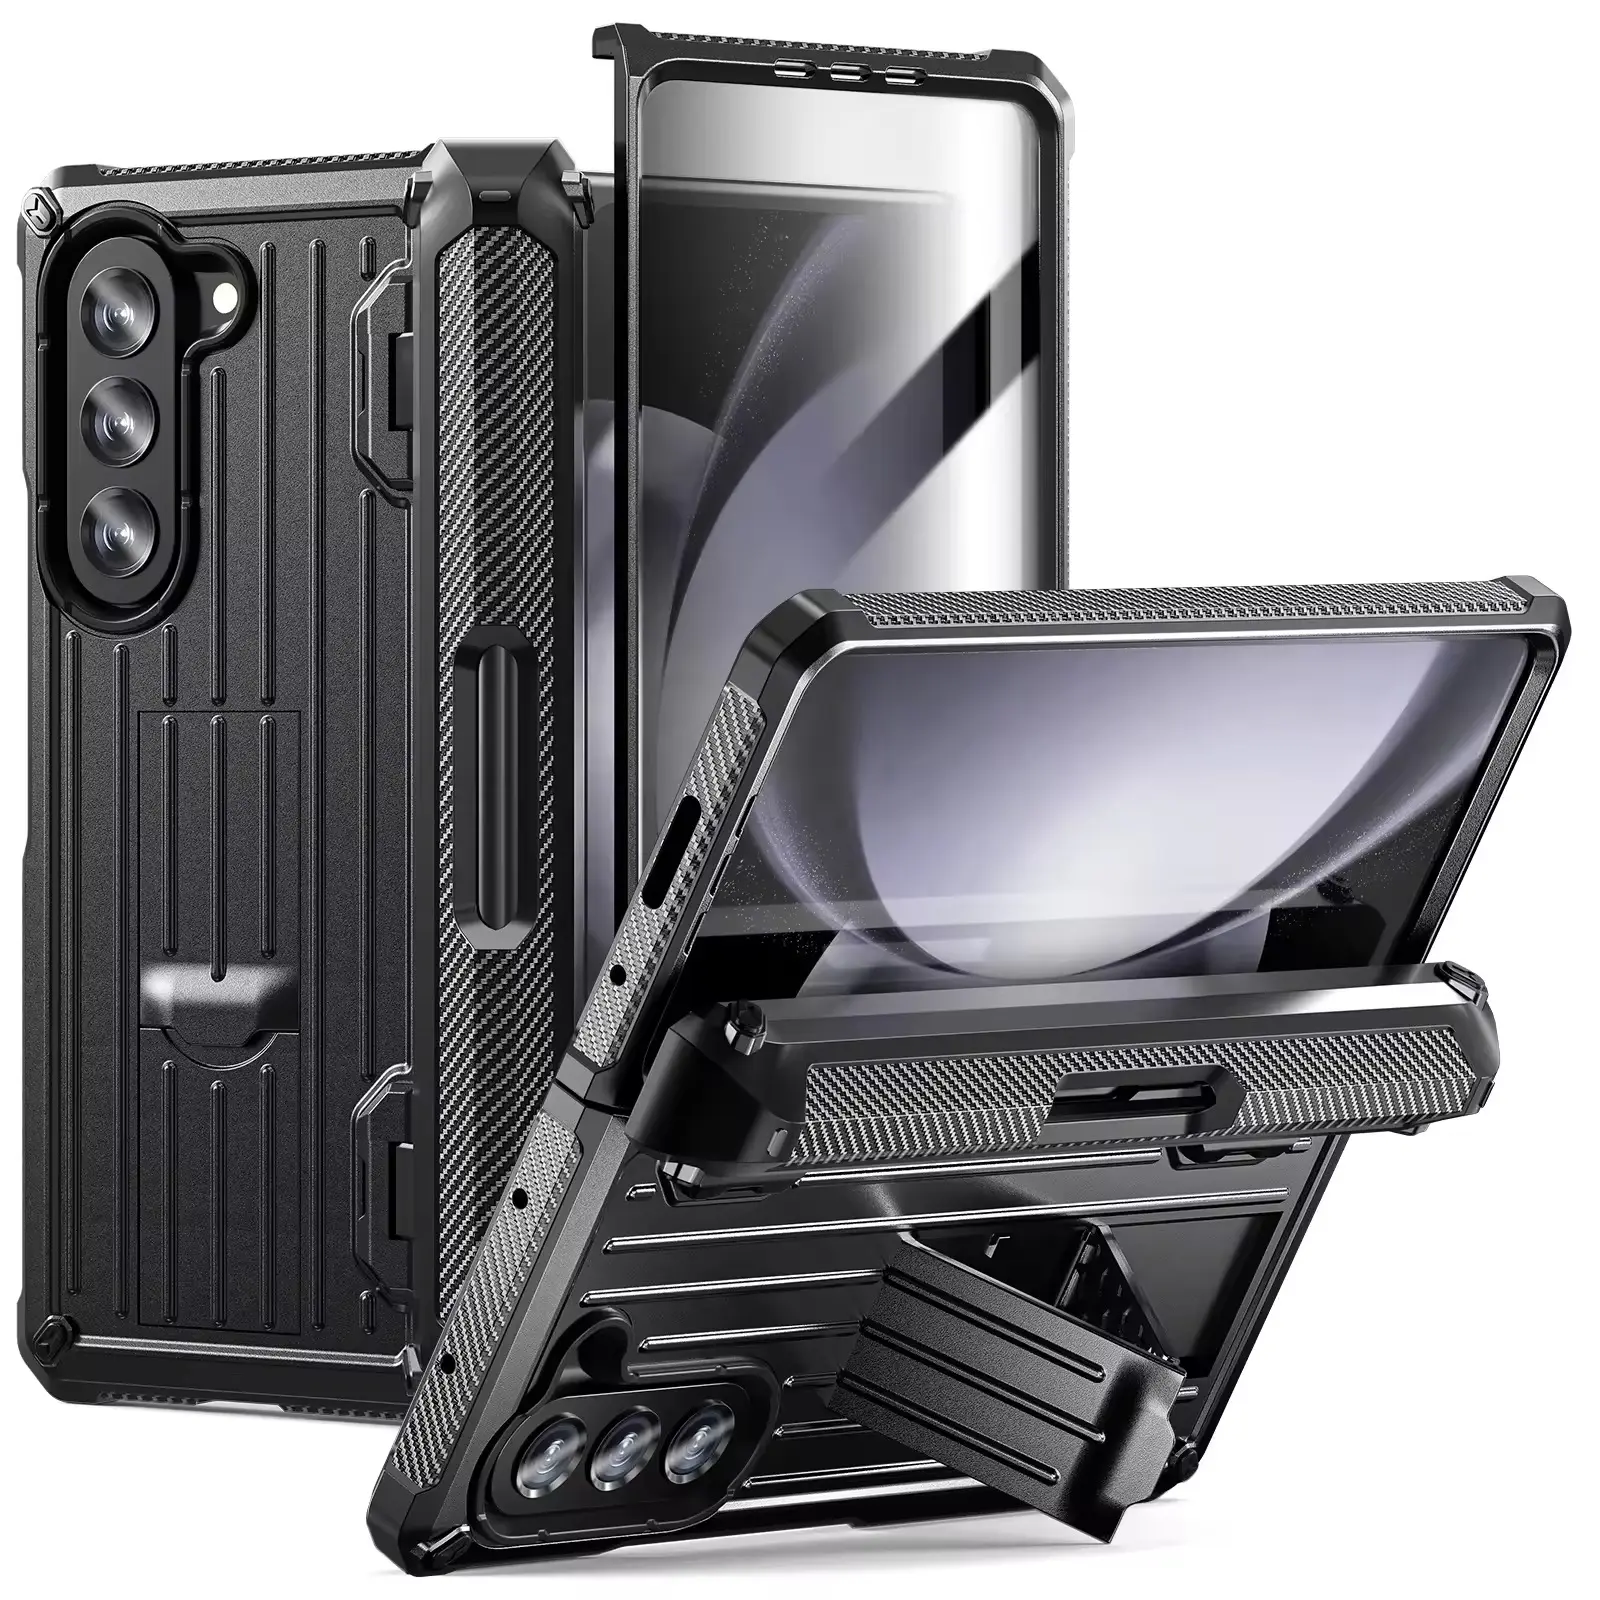 New stylefor Samsung Galaxy Z foldkickstand điện thoại trường hợp gồ ghề Trường hợp với xây dựng trong bảo vệ màn hình + S Pen khe cắm